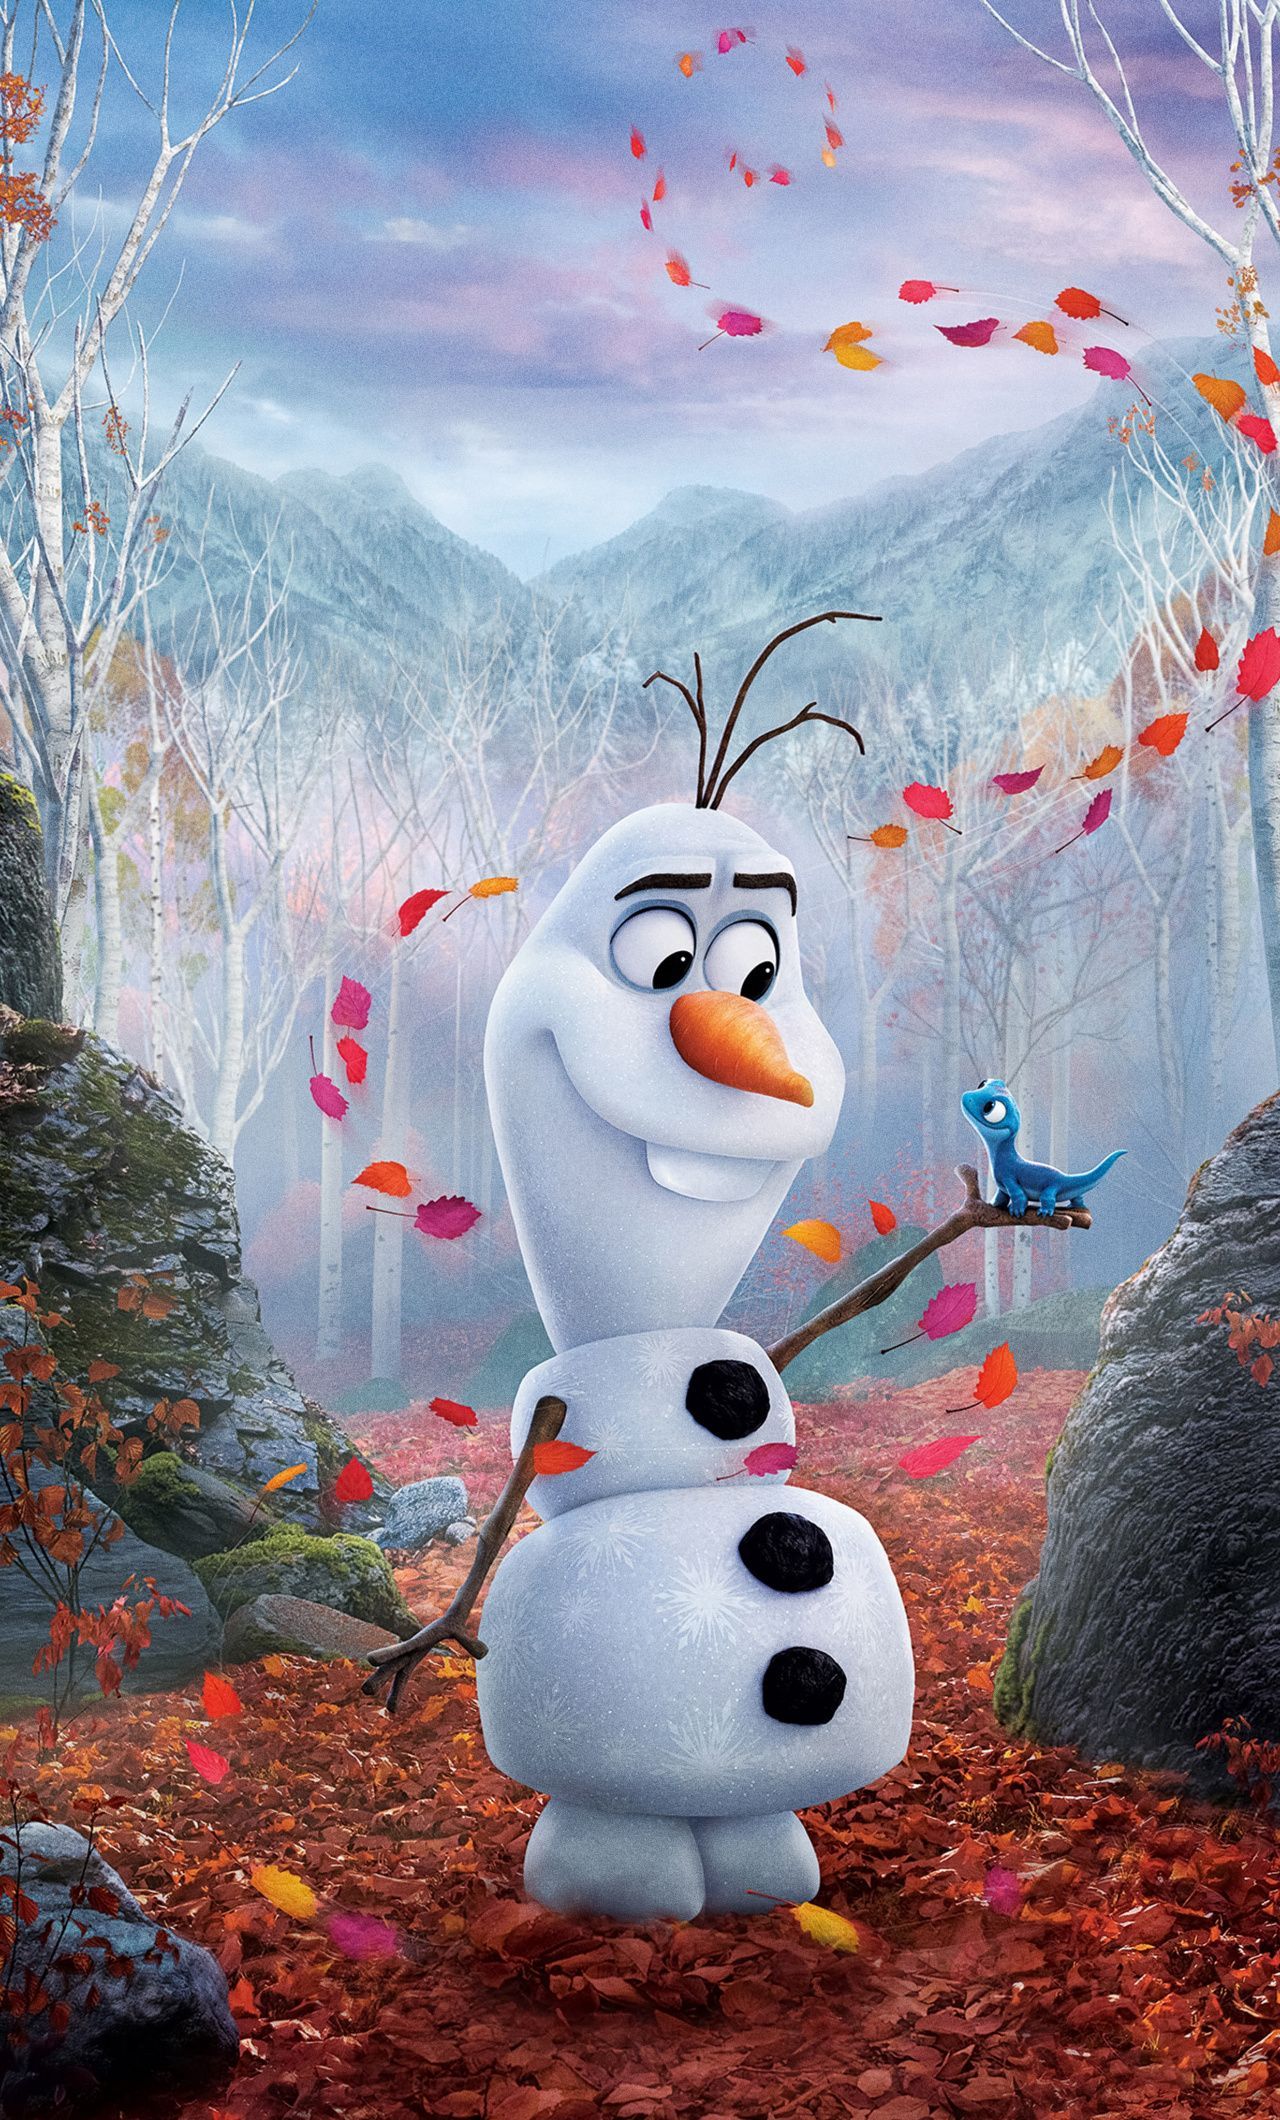 Happy Snowman, Olaf, Frozen movie, 2019 wallpaper